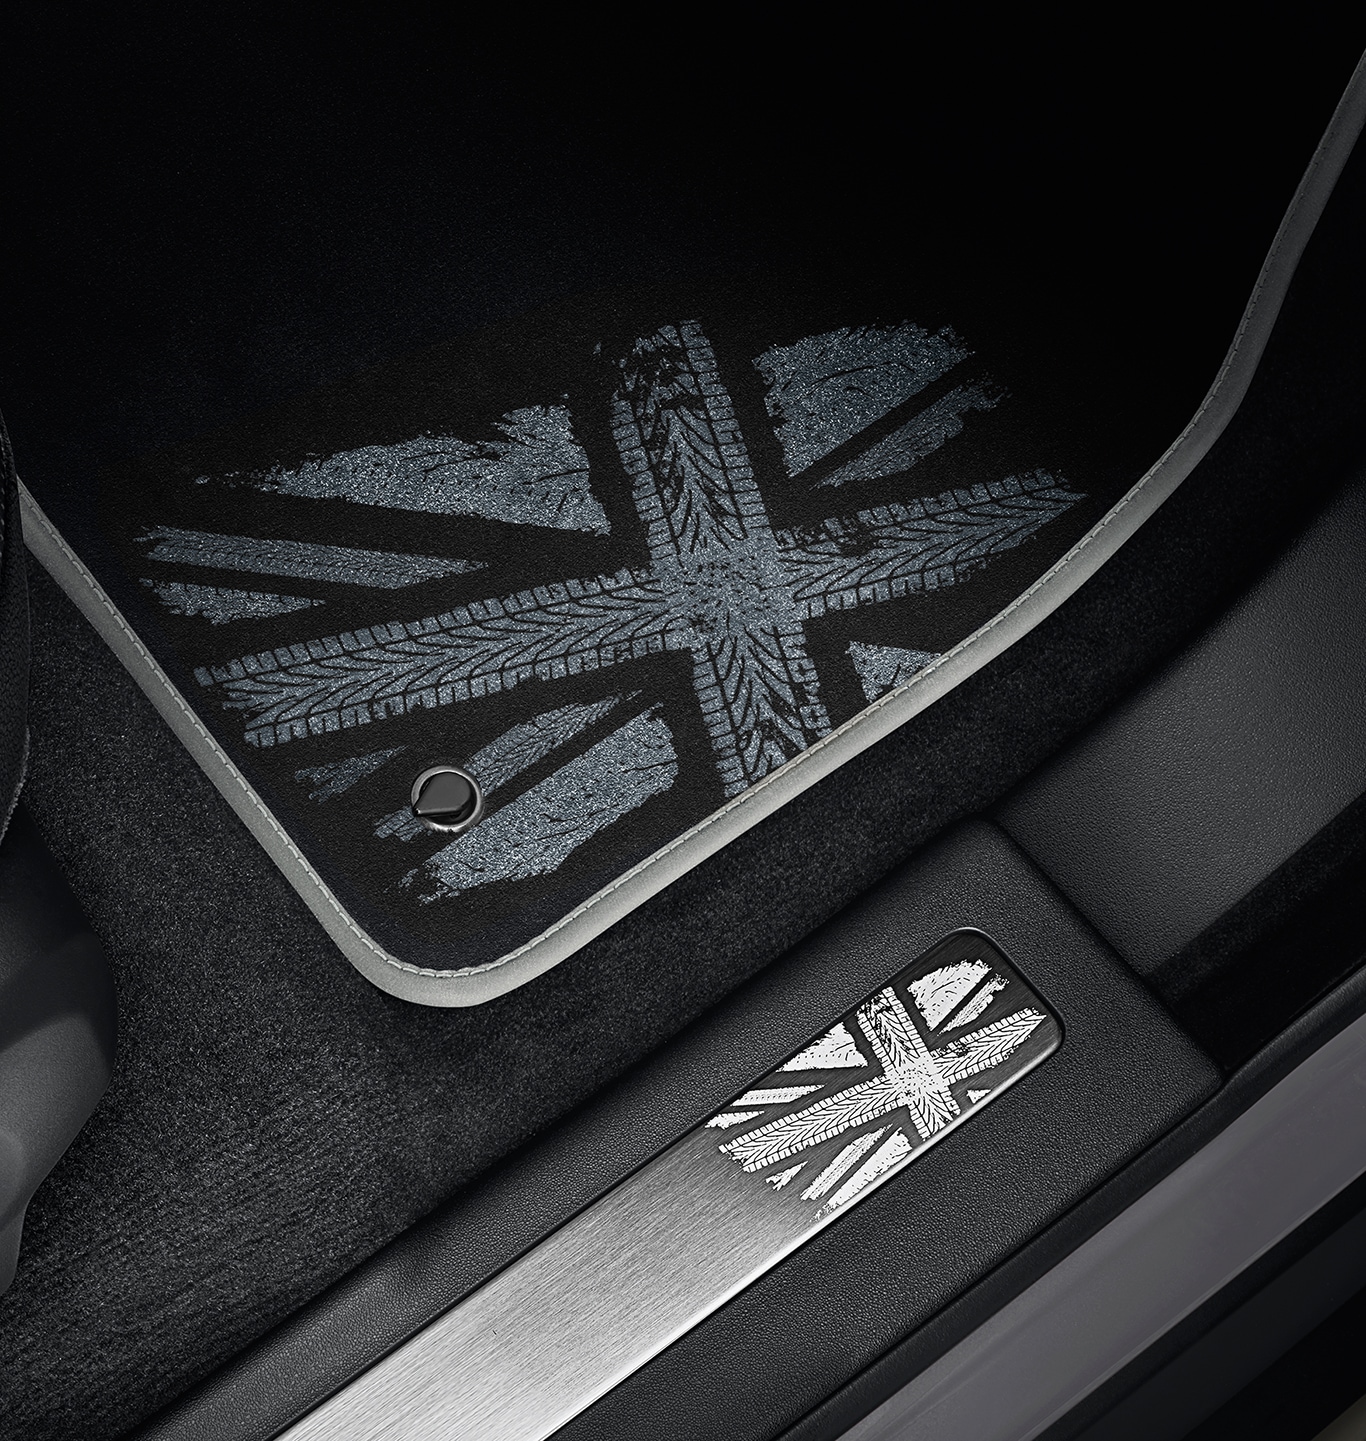 地毯脚垫套装-英国国旗风格，单色，左驾车型